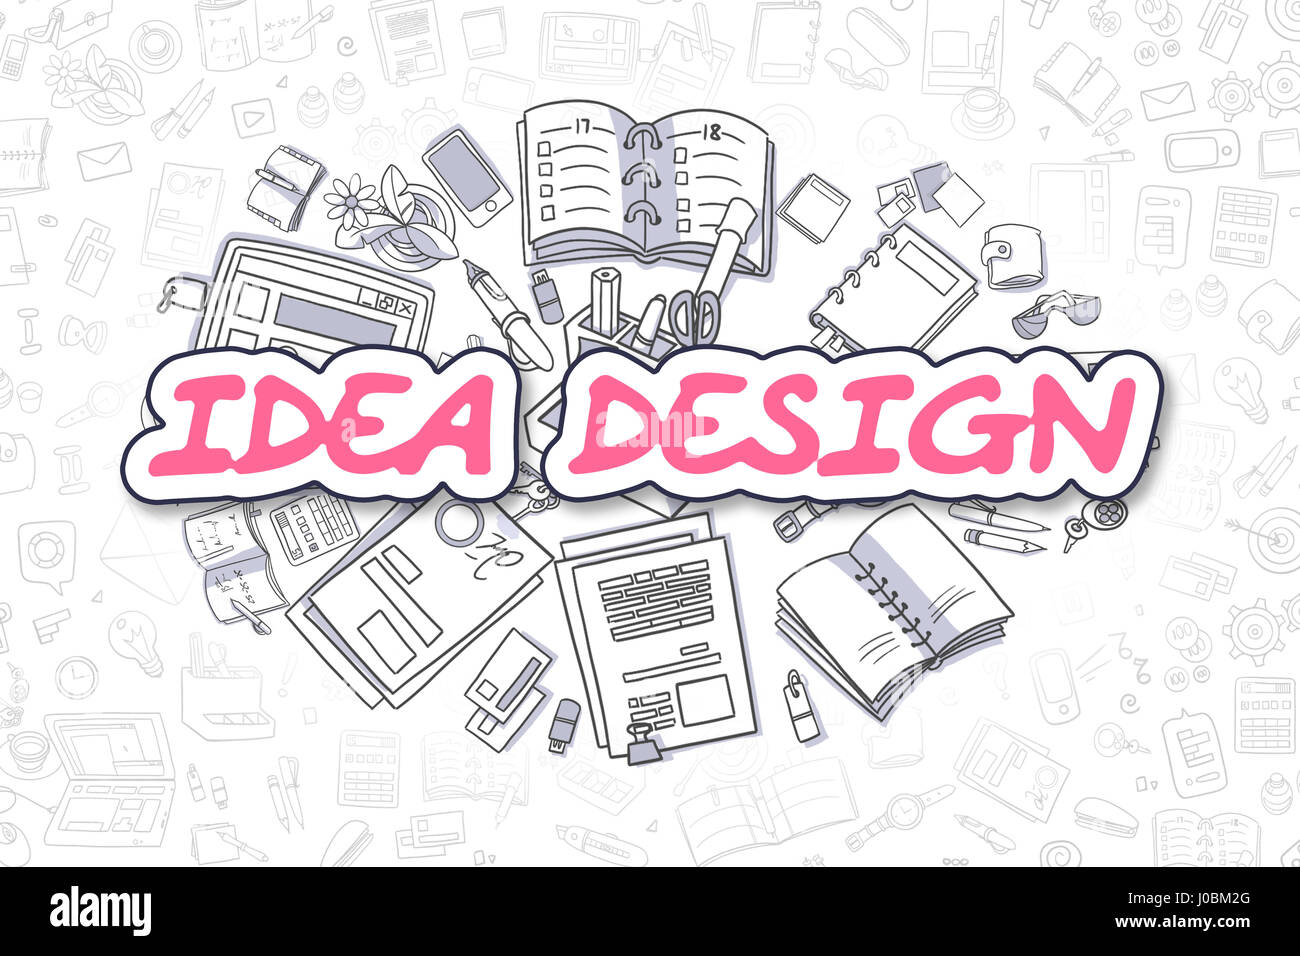 Idée Design - Cartoon mot Magenta. Concept d'entreprise. Banque D'Images